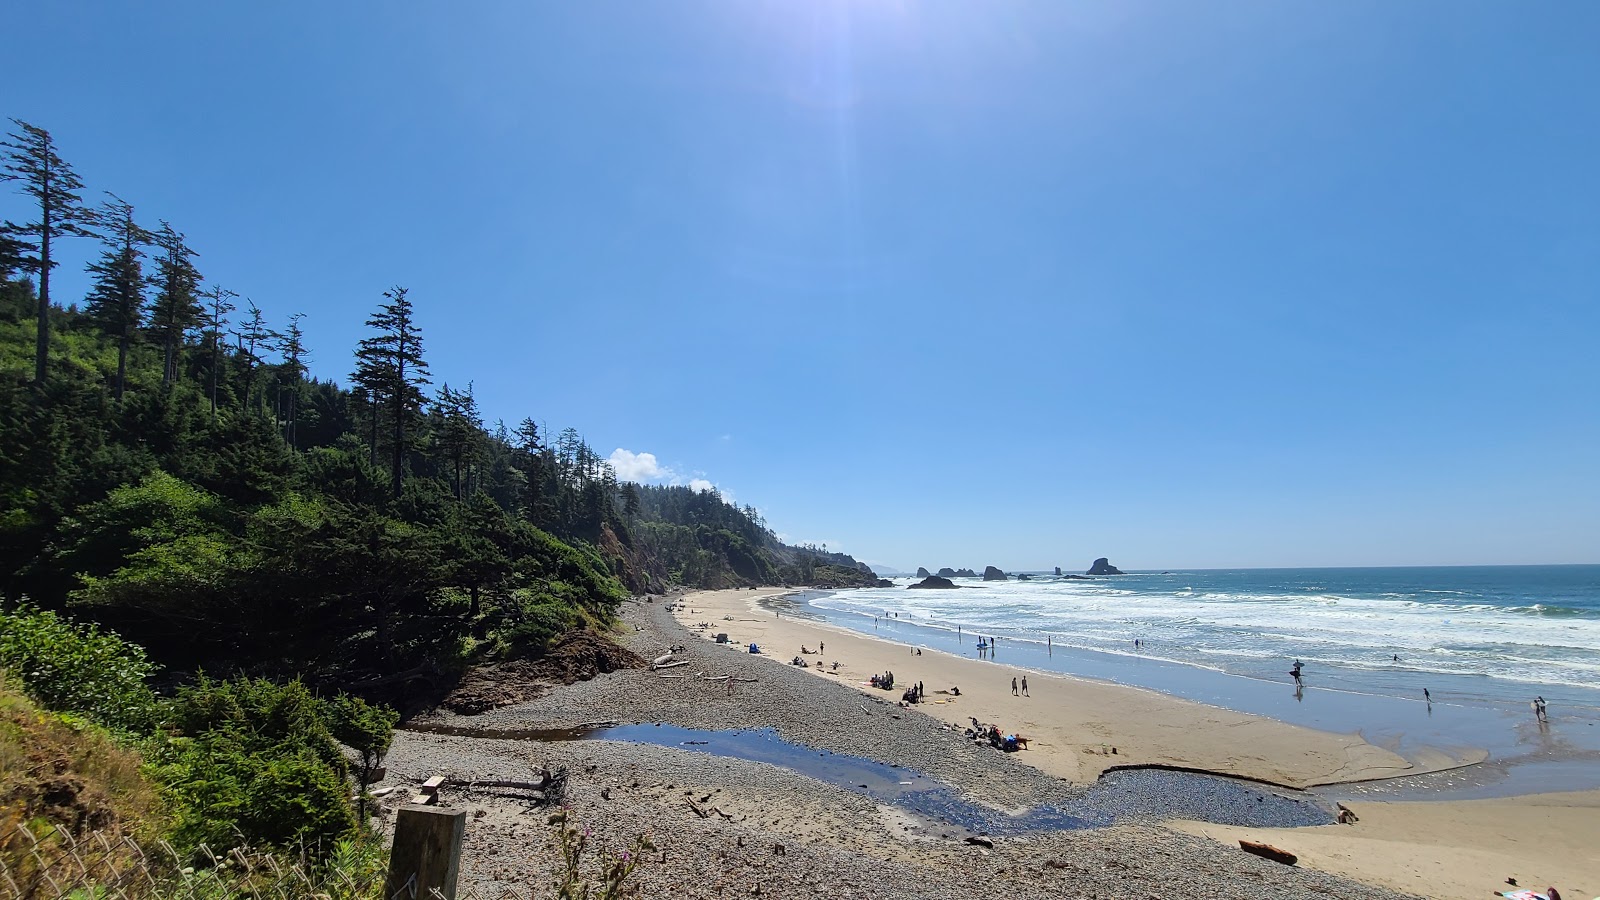 Fotografija Indian Beach Oregon nahaja se v naravnem okolju